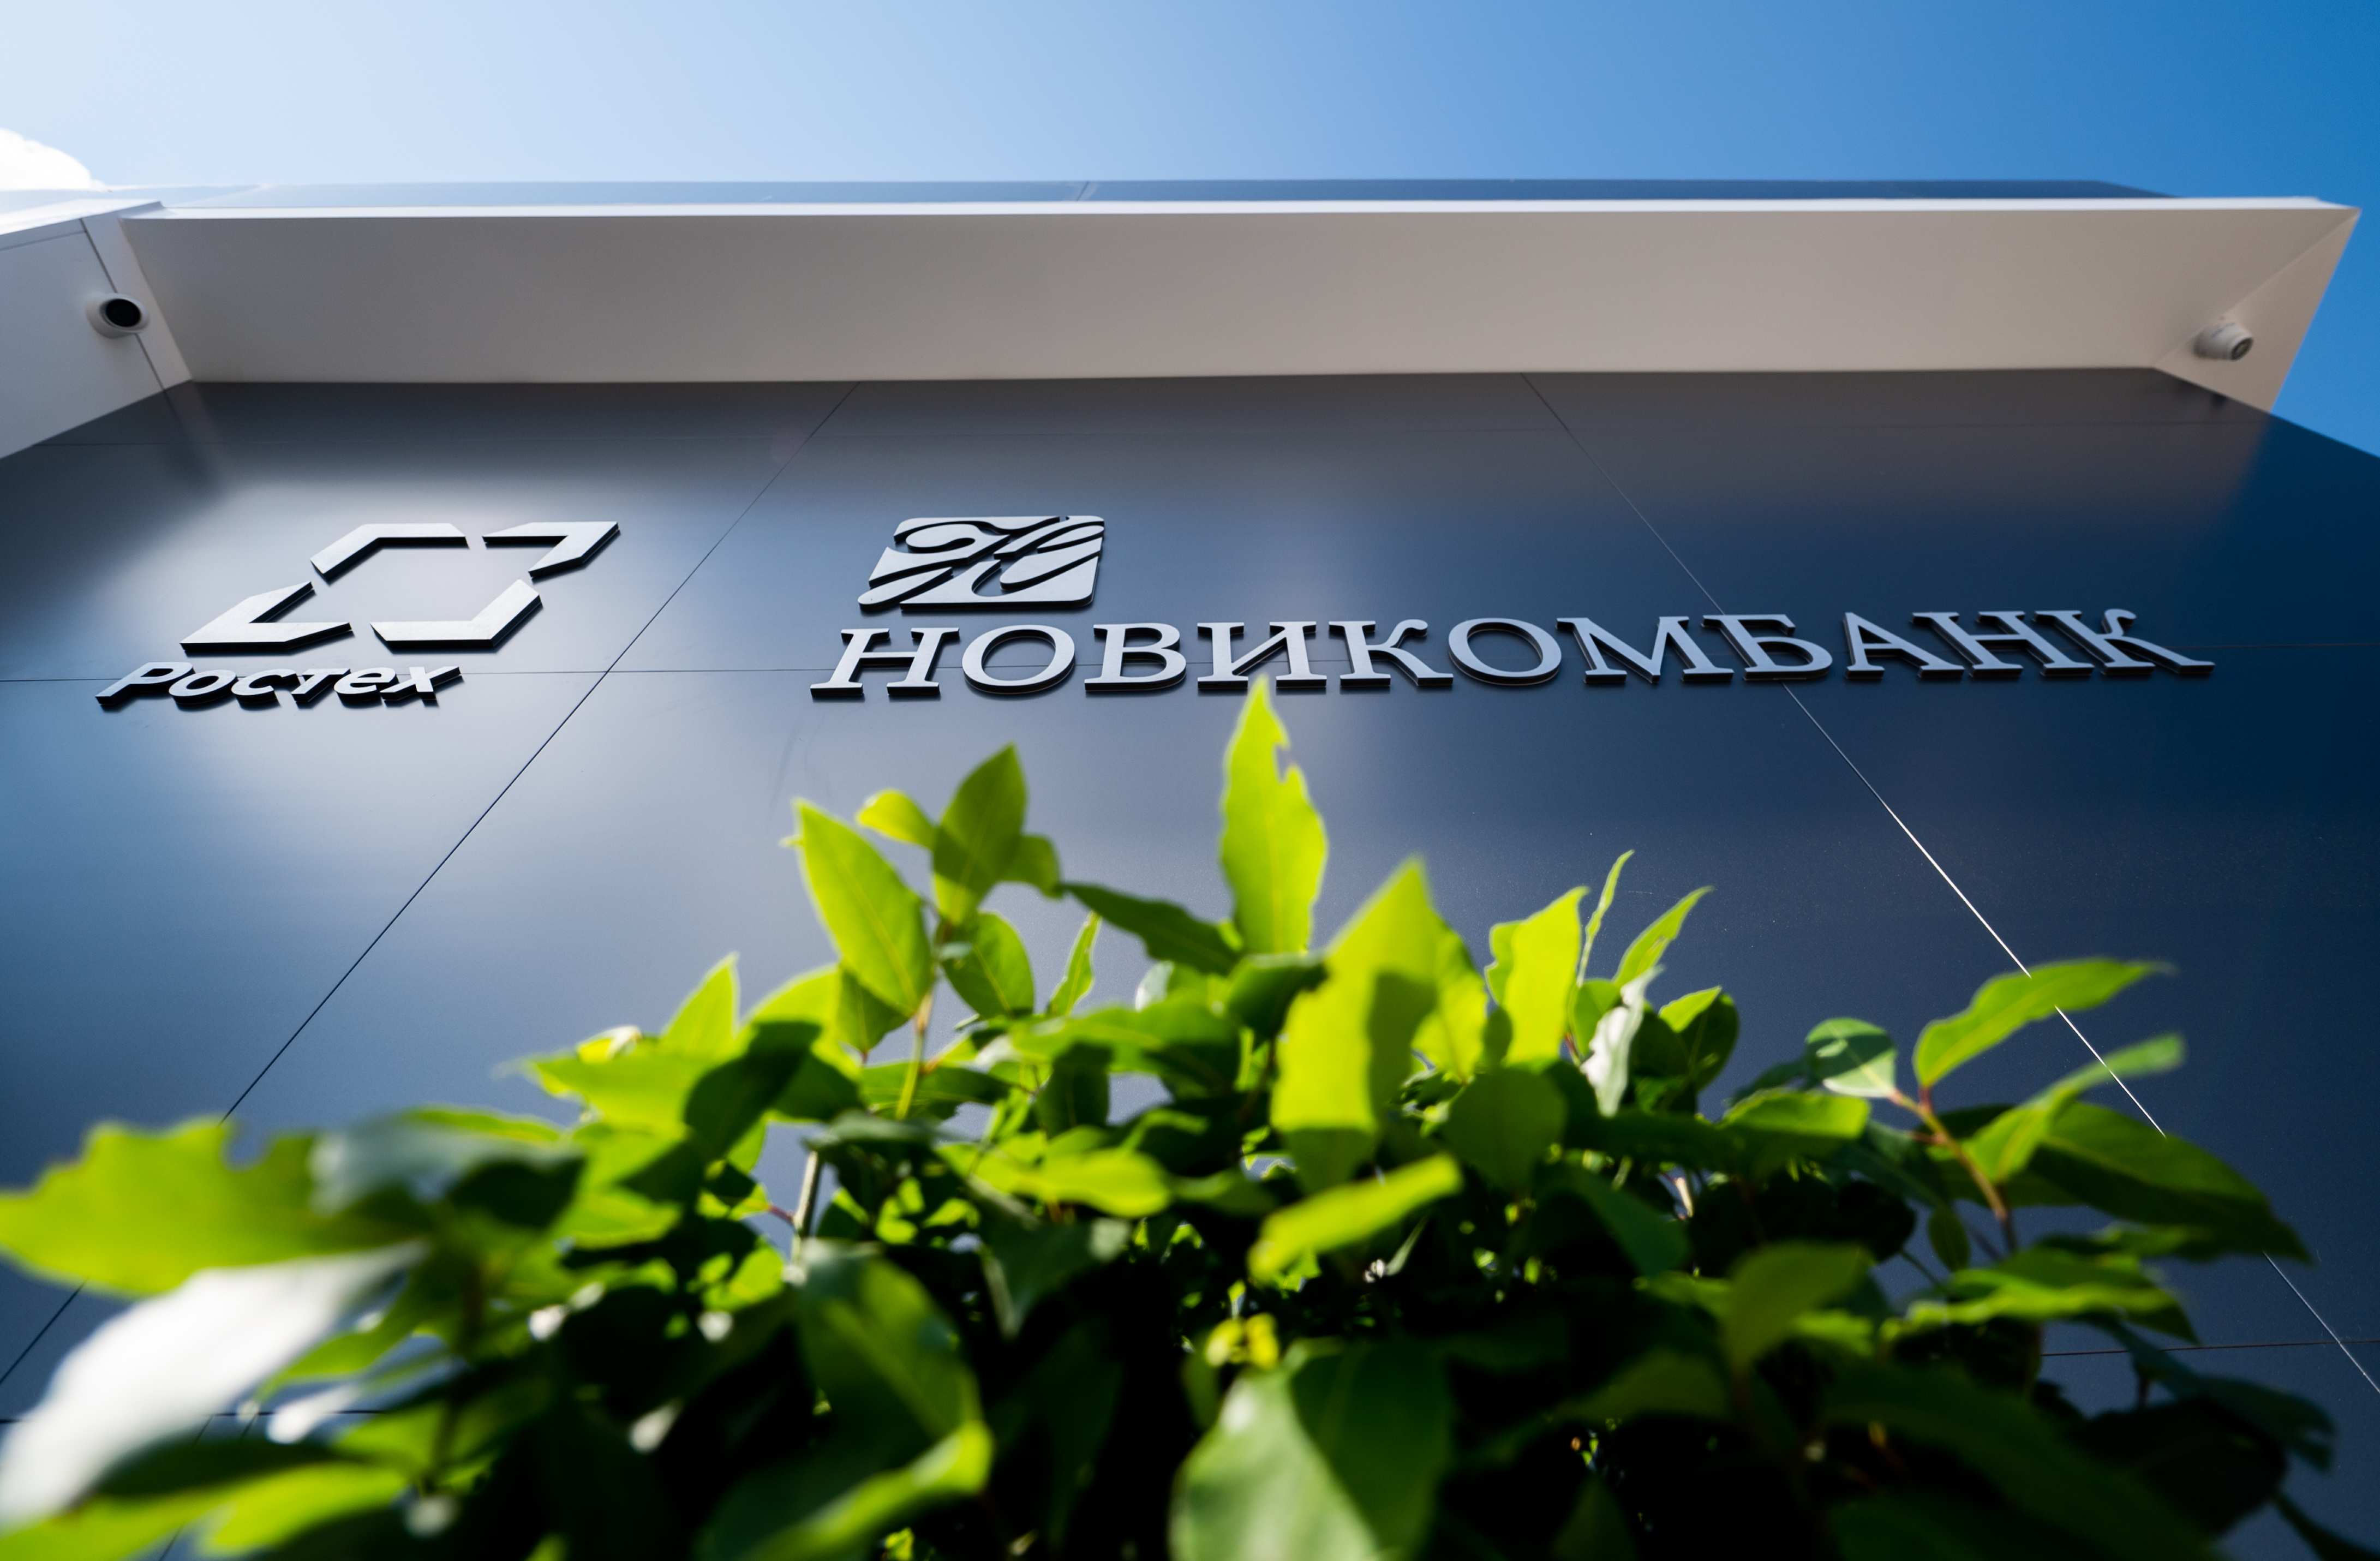 ФРП провел первую сделку по продаже части кредитного портфеля Новикомбанку